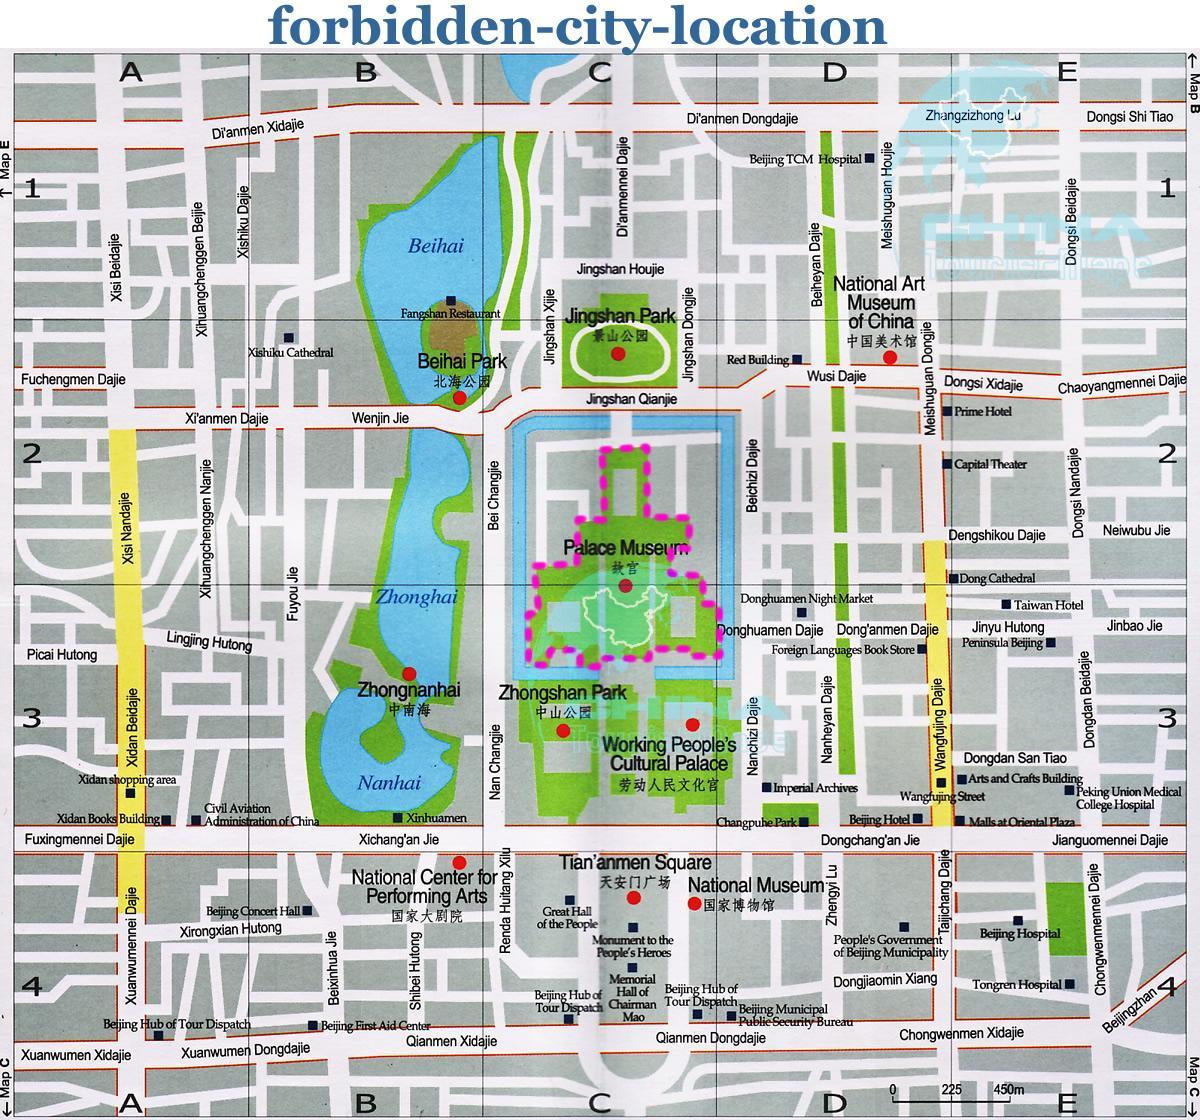 नक्शे के फॉरबिडन सिटी के नक्शे में विस्तृत